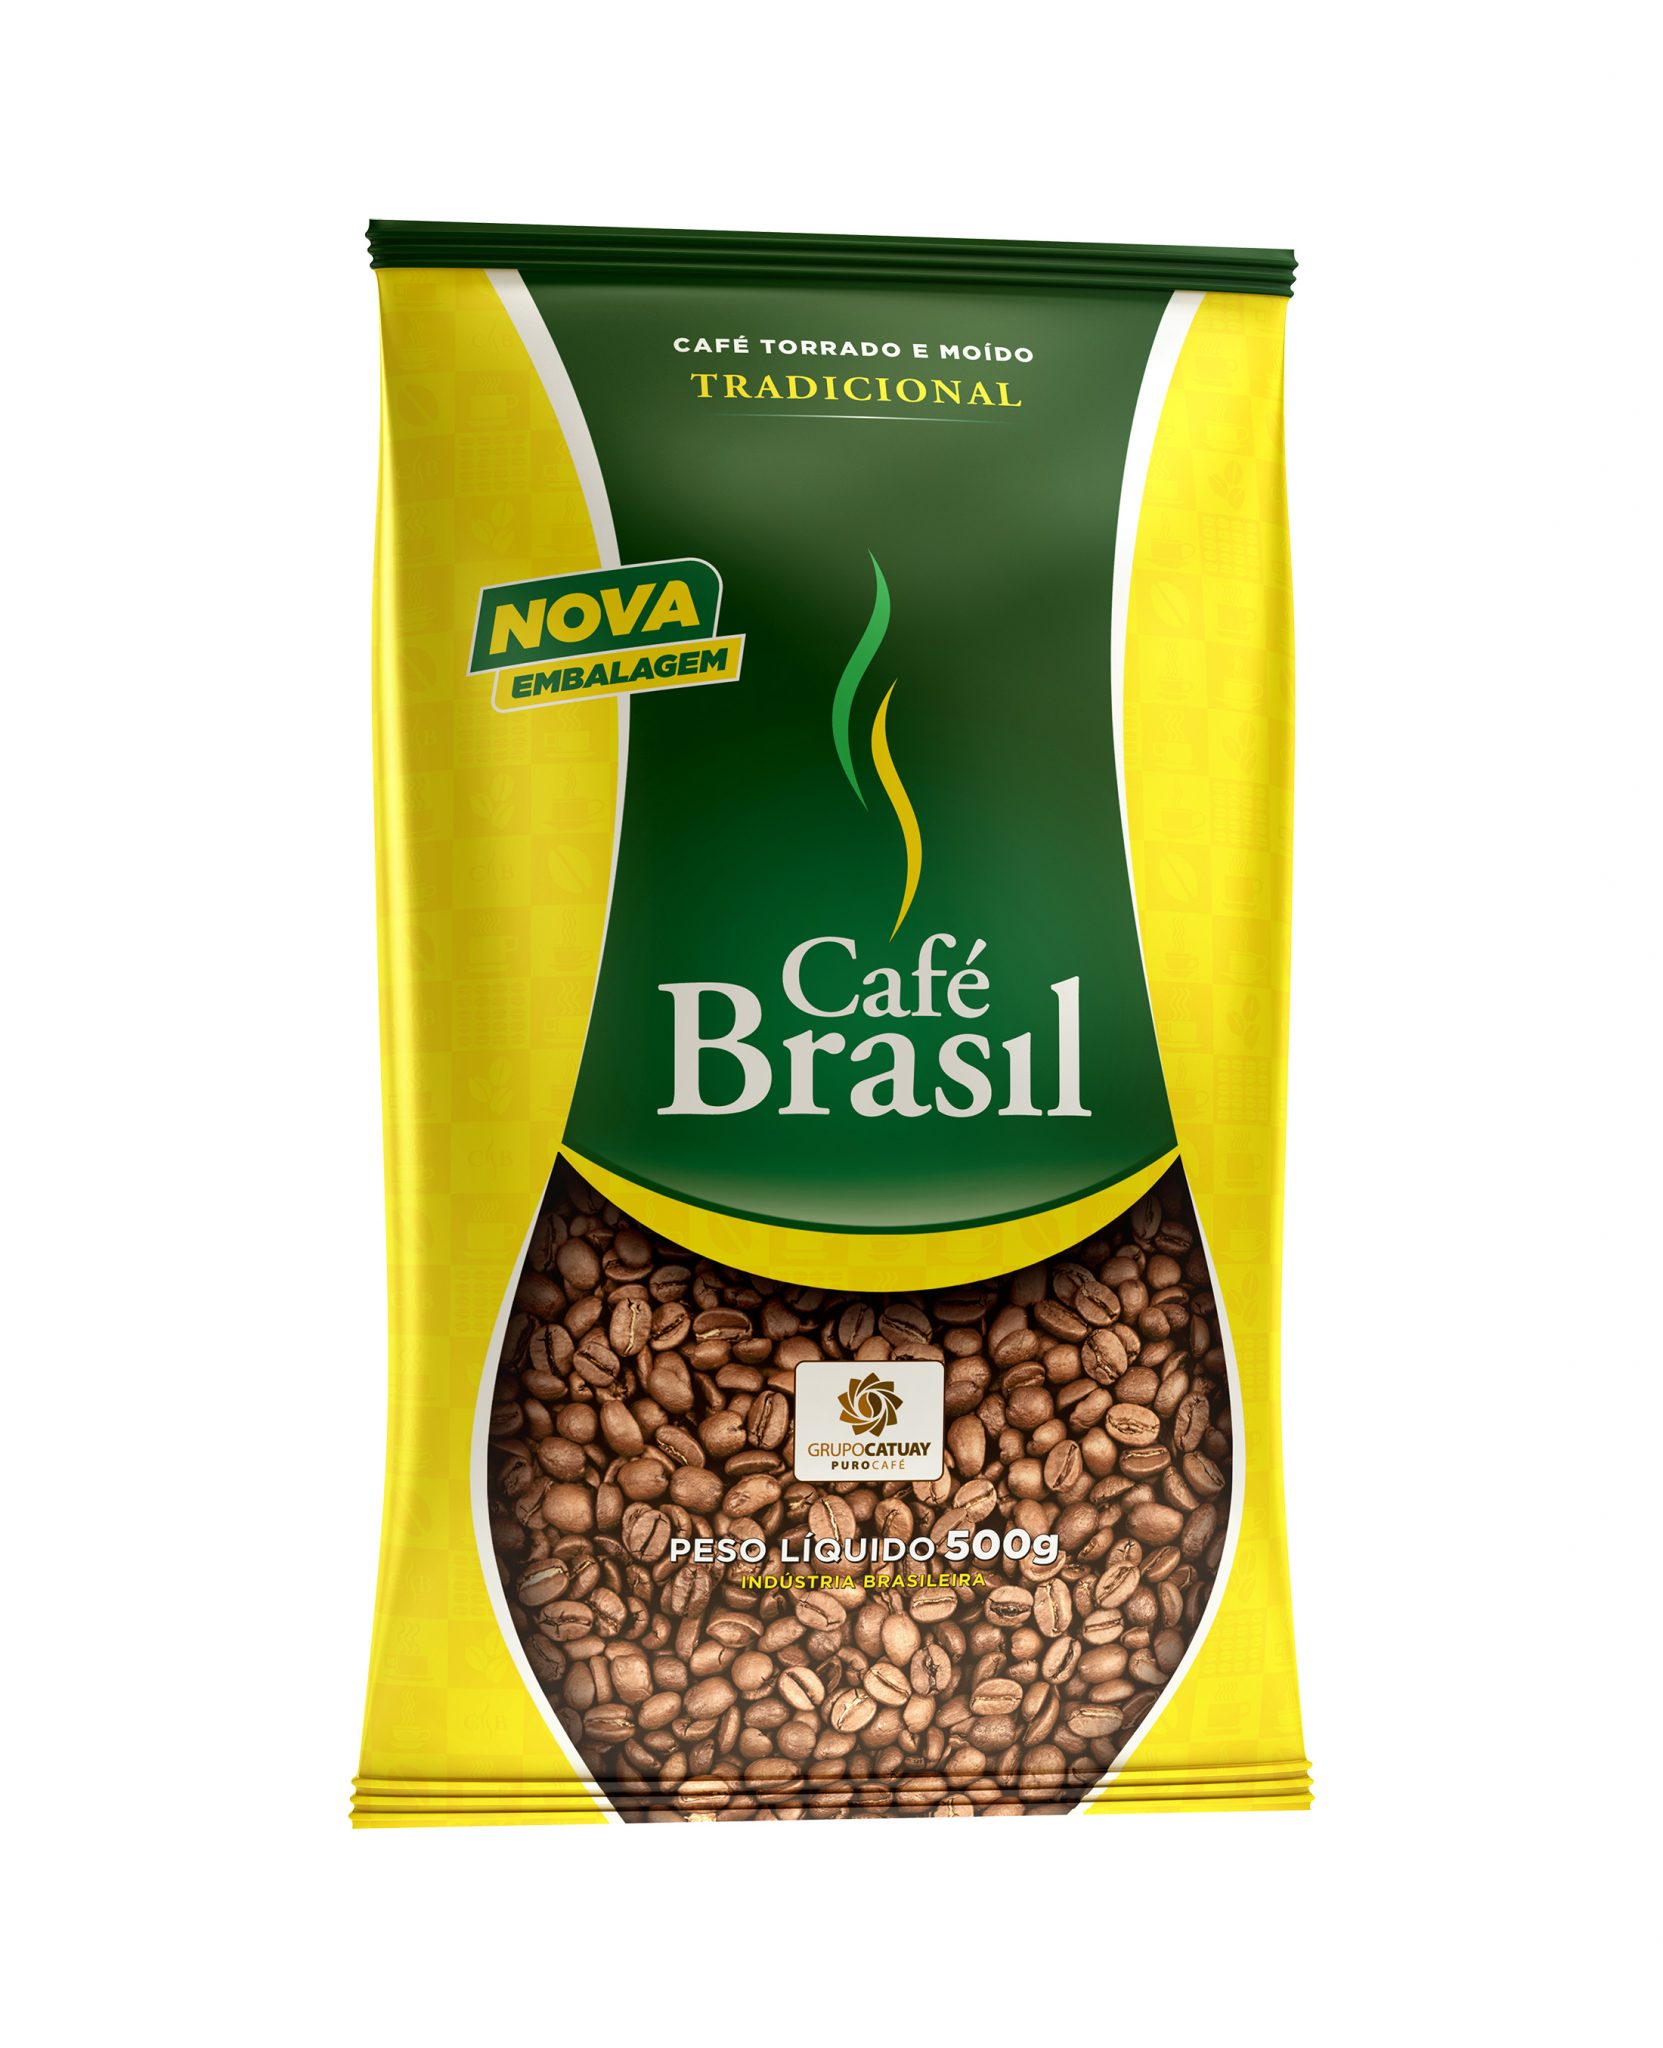 Café Brasil depois